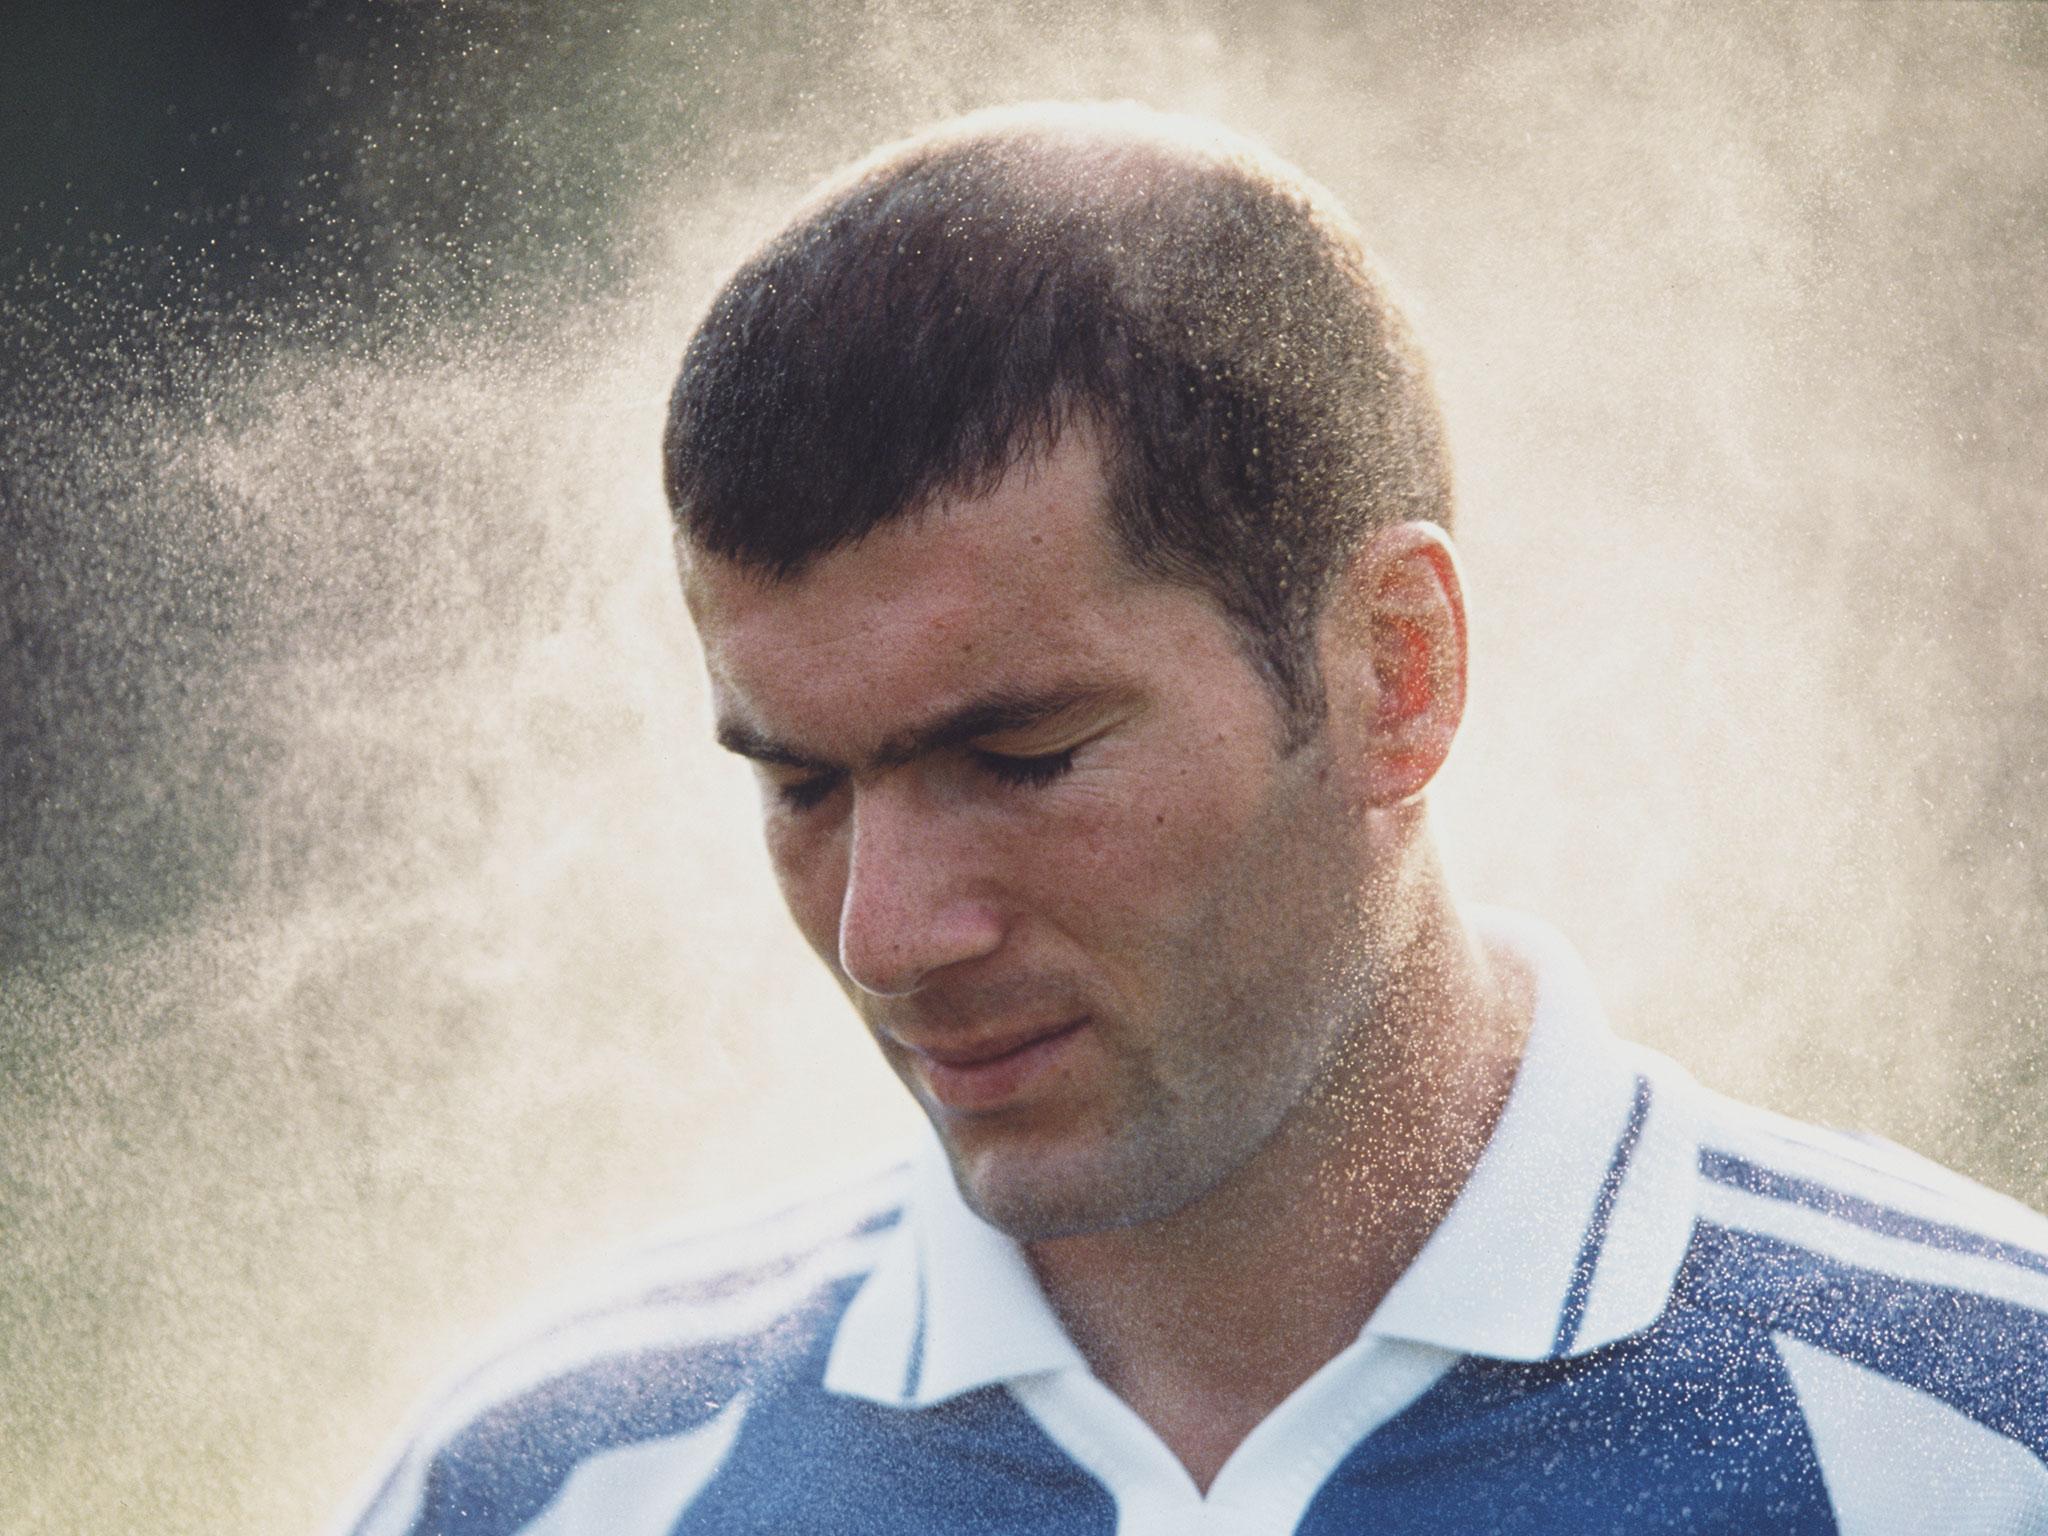 Zinedine Zidane during his days at Juventus